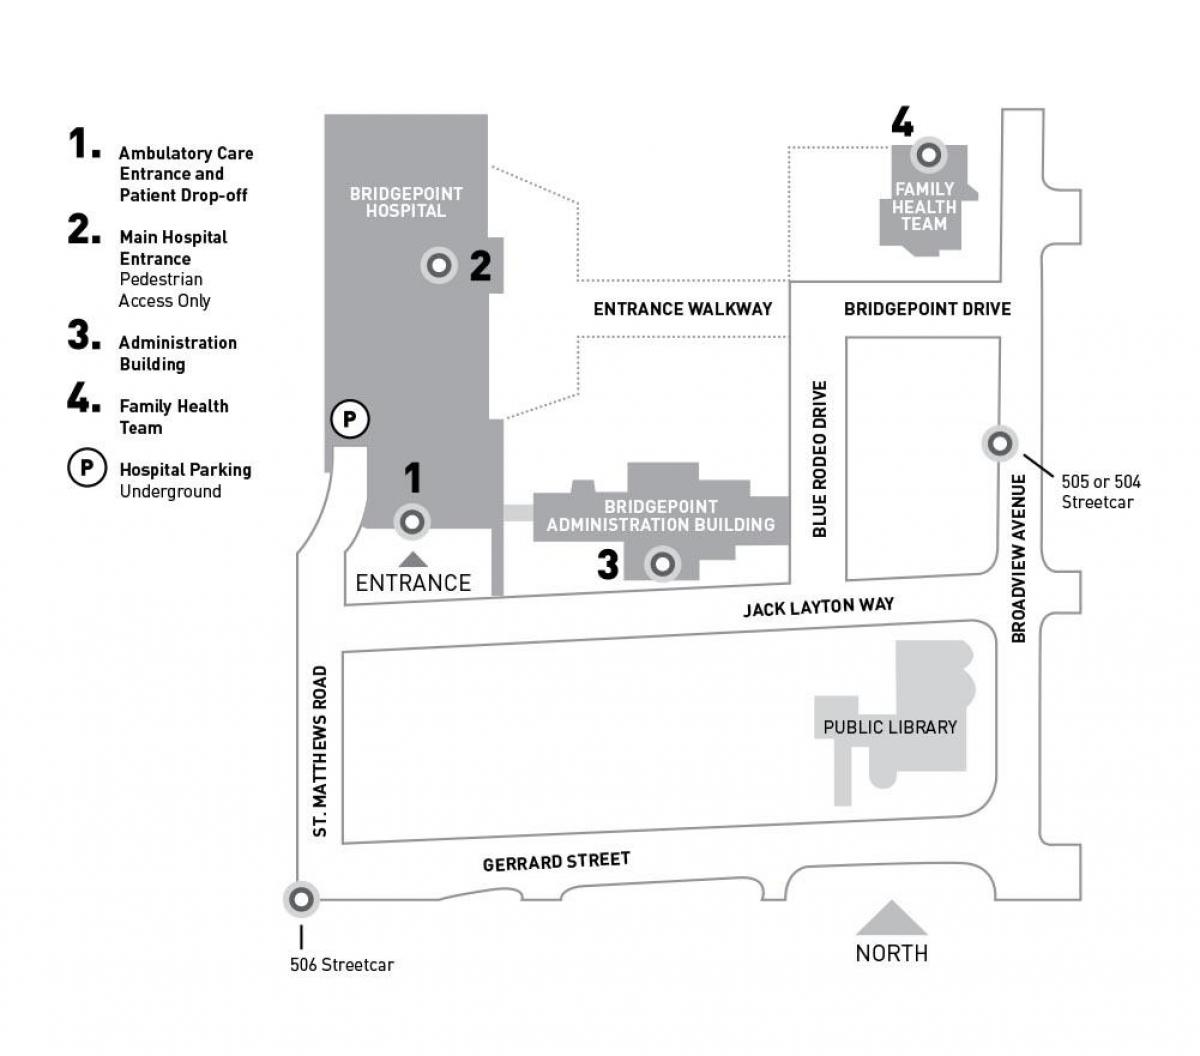 Χάρτης της Hospital Σινά Σύστημα Υγείας-Bridgepoint Τορόντο